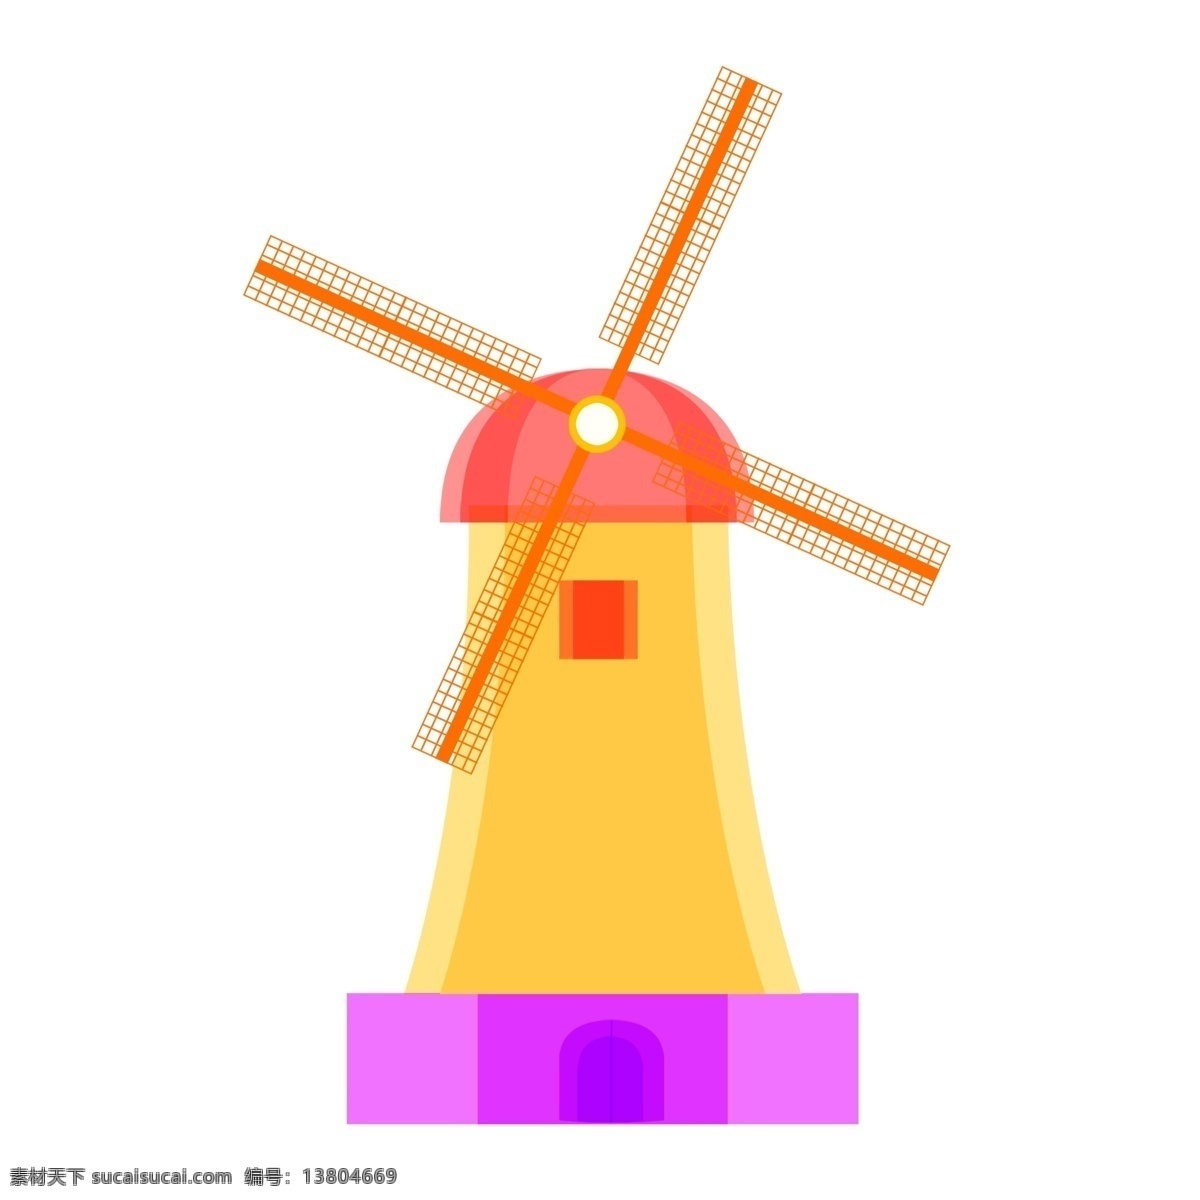 田园 风车 彩 糖果 色 手绘 卡通 欧洲 建筑 广告 欧洲建筑 手绘卡通 糖果色 田园风车